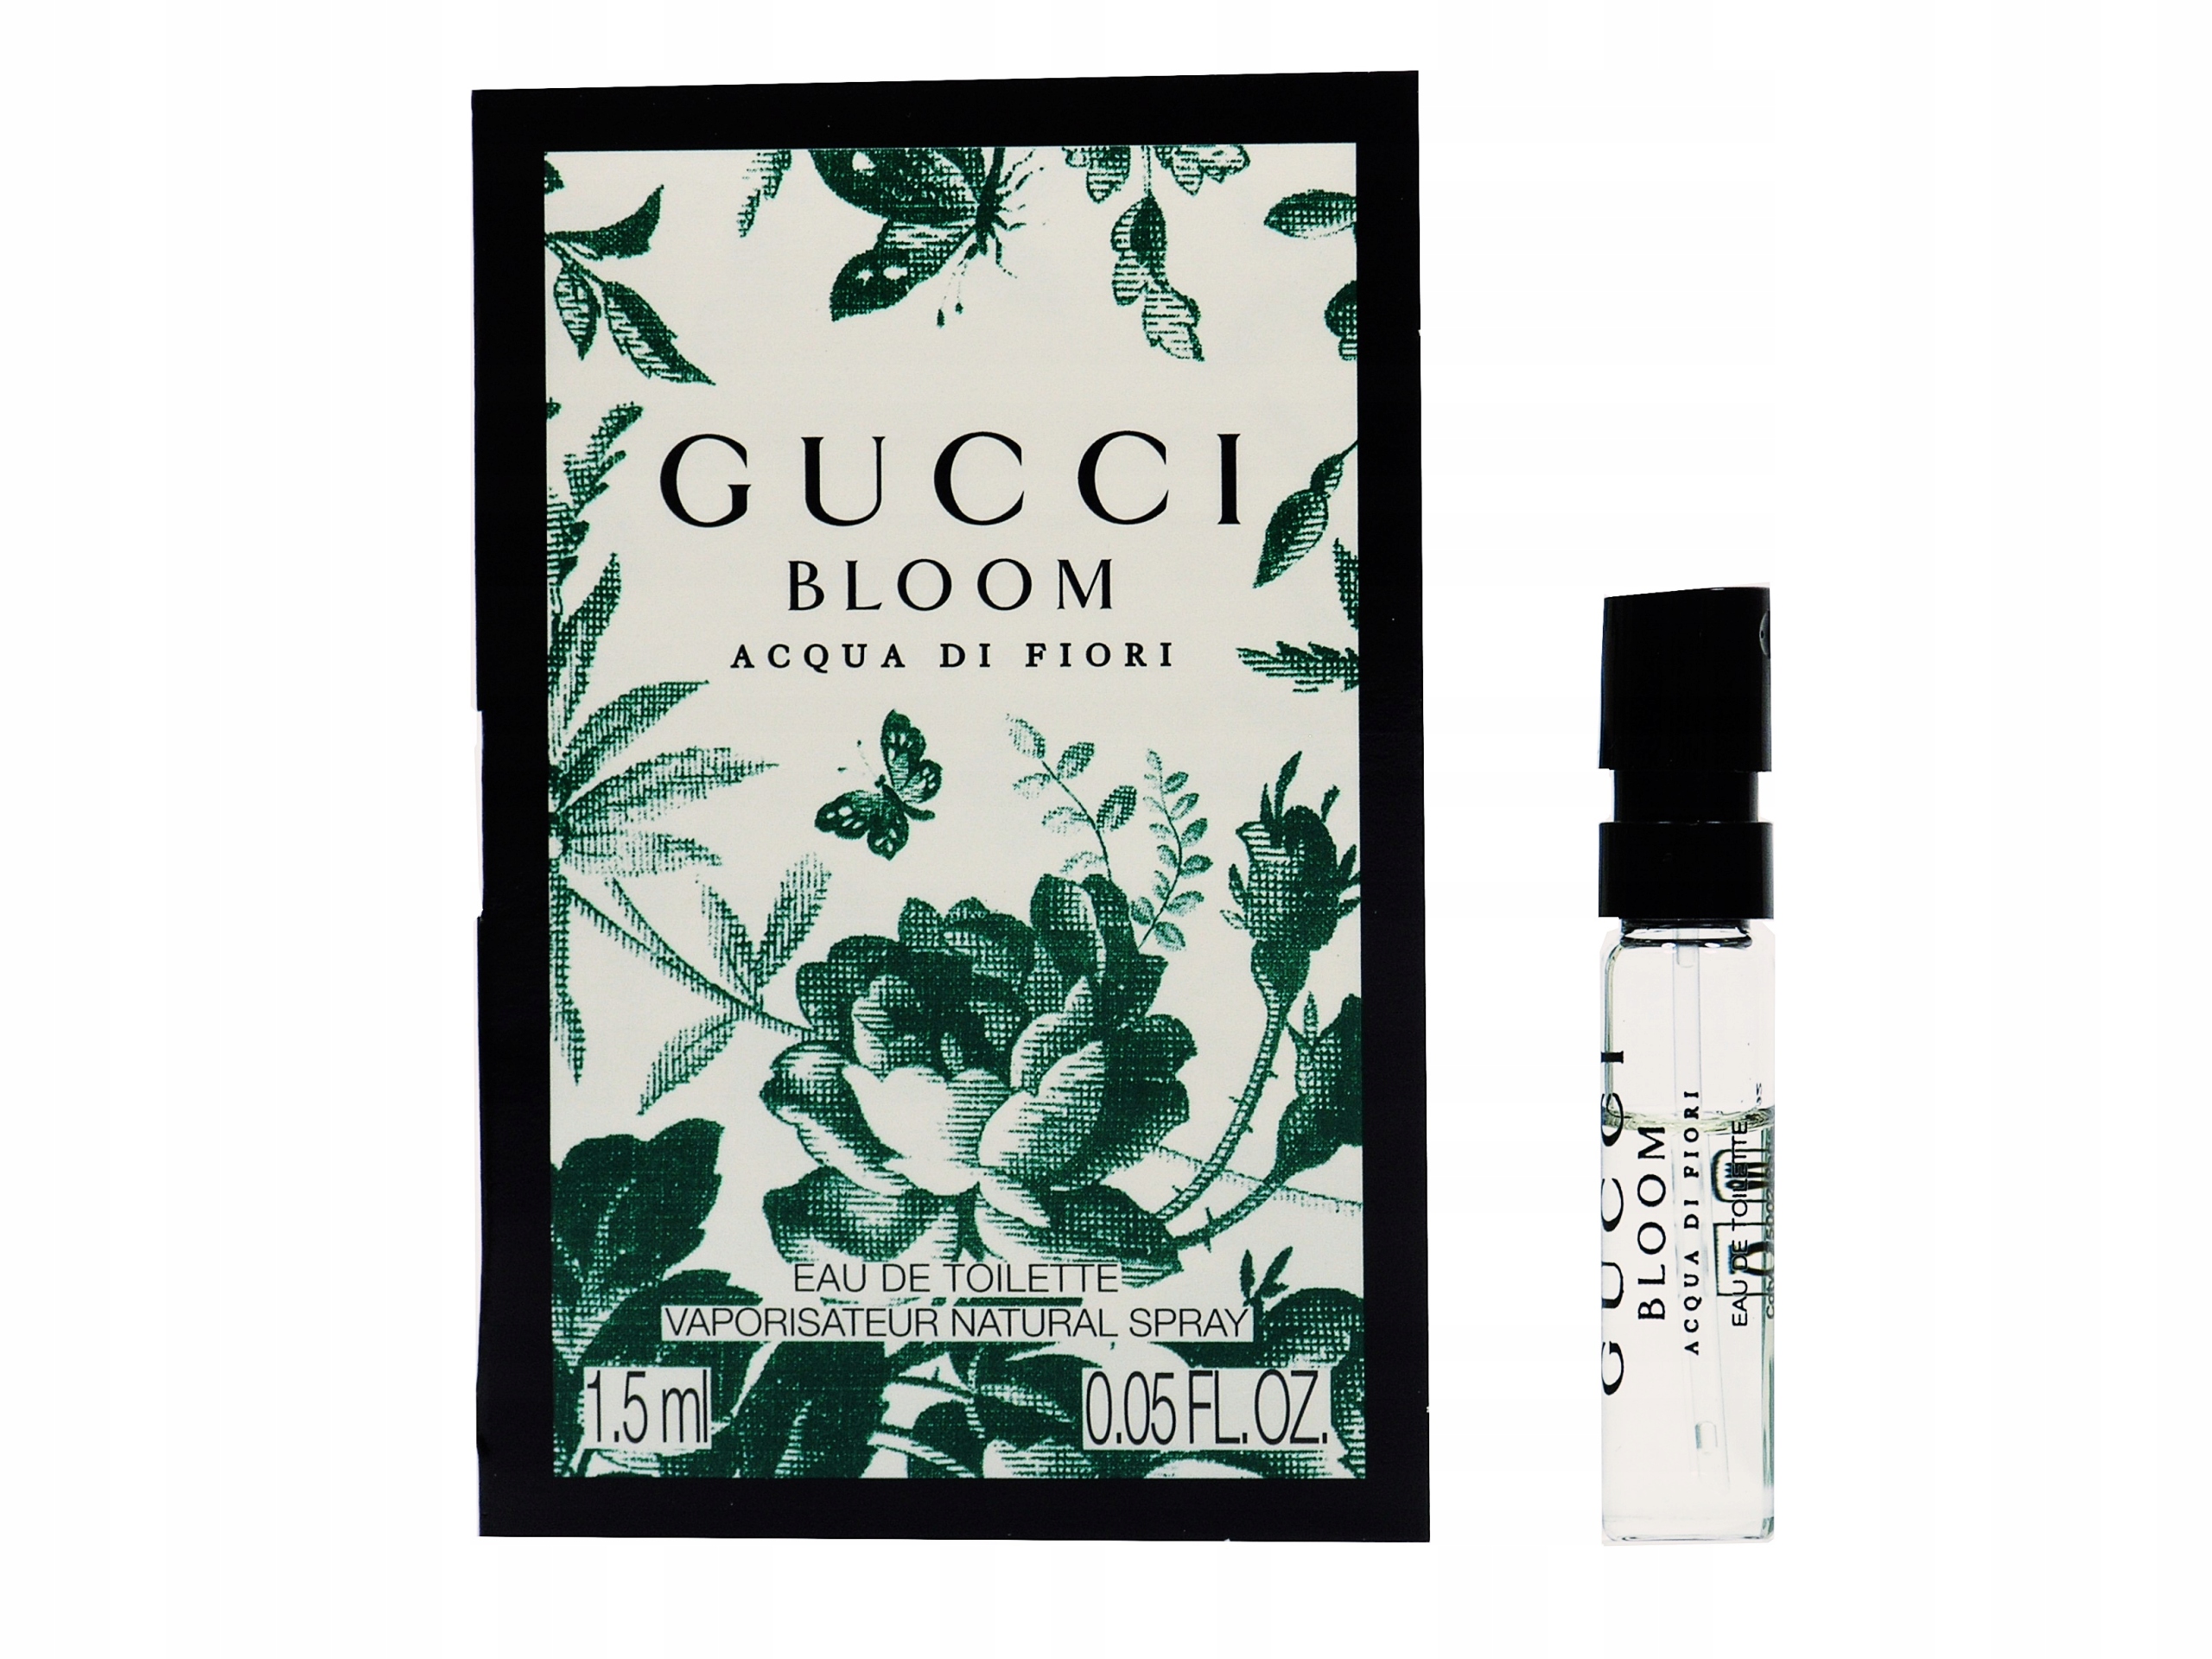 Bloom acqua di fiori. Gucci - Gucci Bloom acqua di Fiori 5 мл. Gucci Bloom 5 мл. Gucci Bloom EDT 1.5ml. Gucci Bloom acqua.